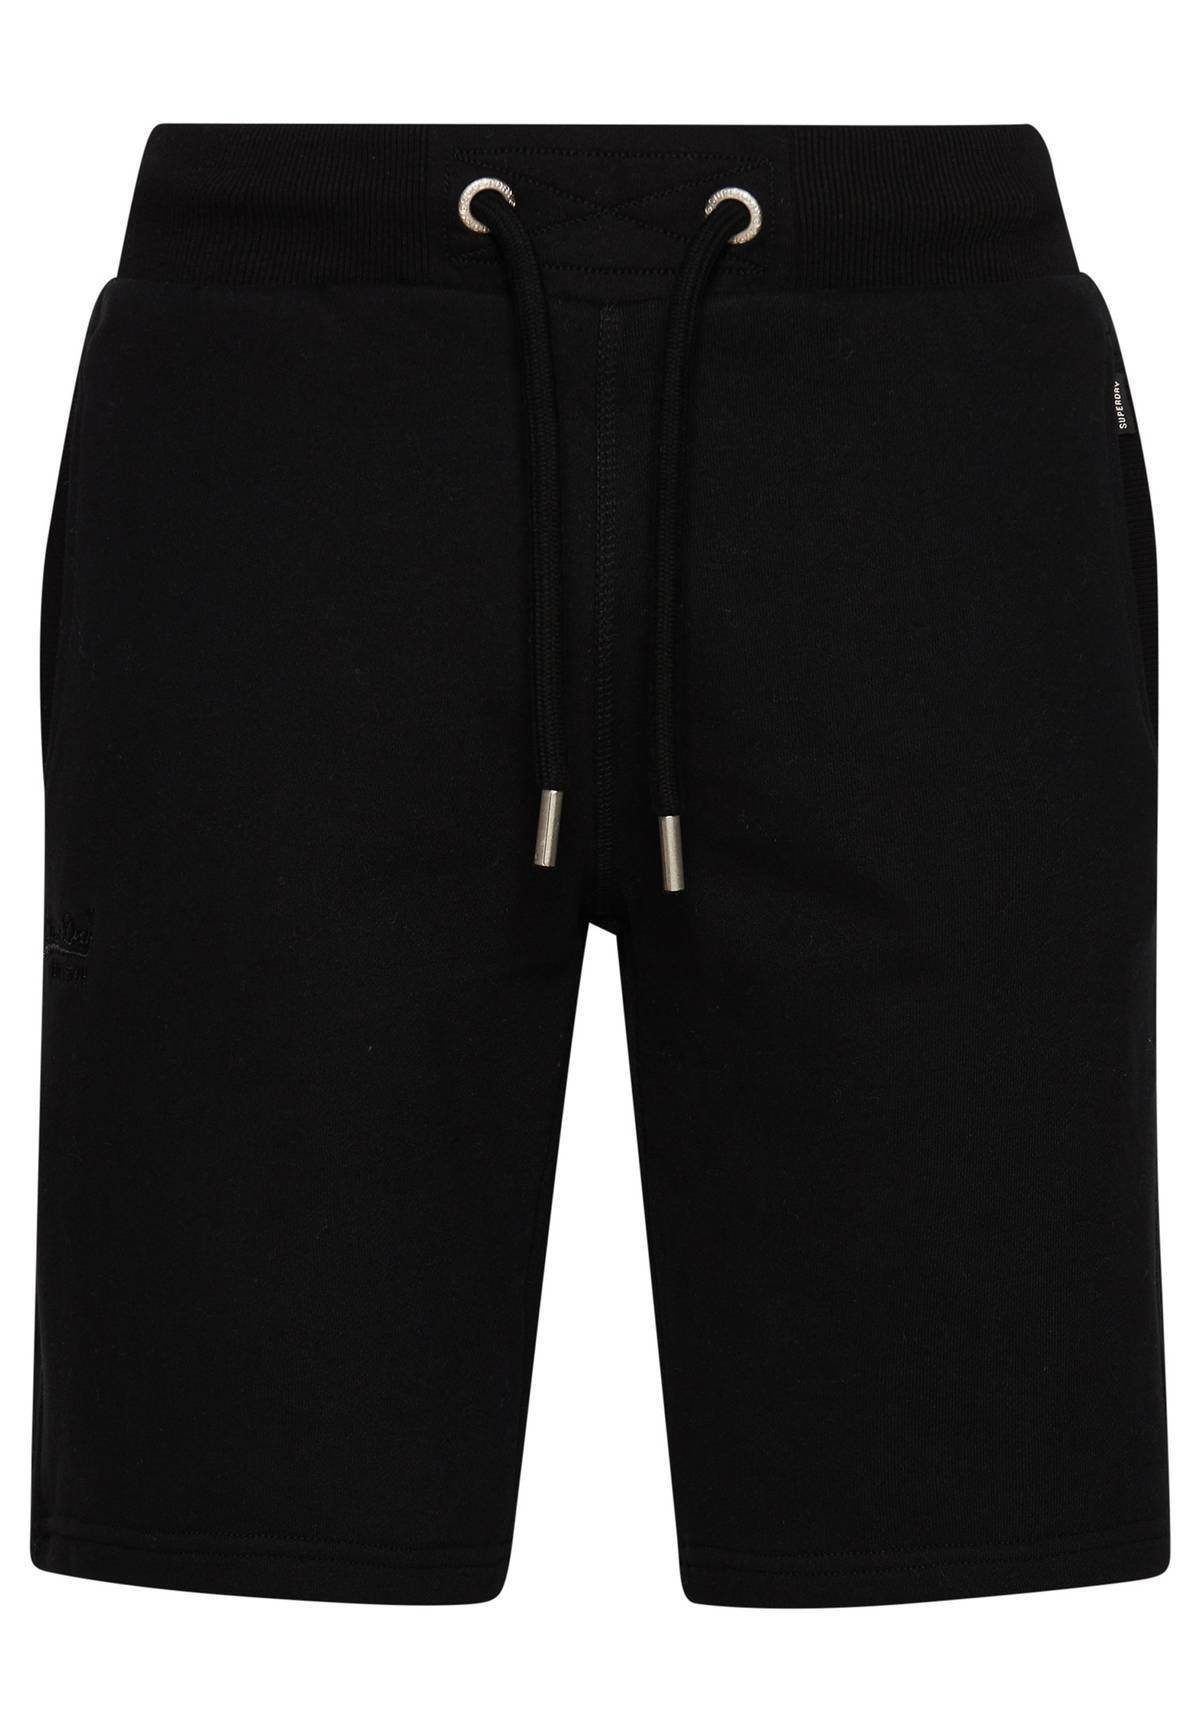 Jogginghose Jersey-Shorts Herren Superdry - Loungewear, Sweatshorts Schwarz